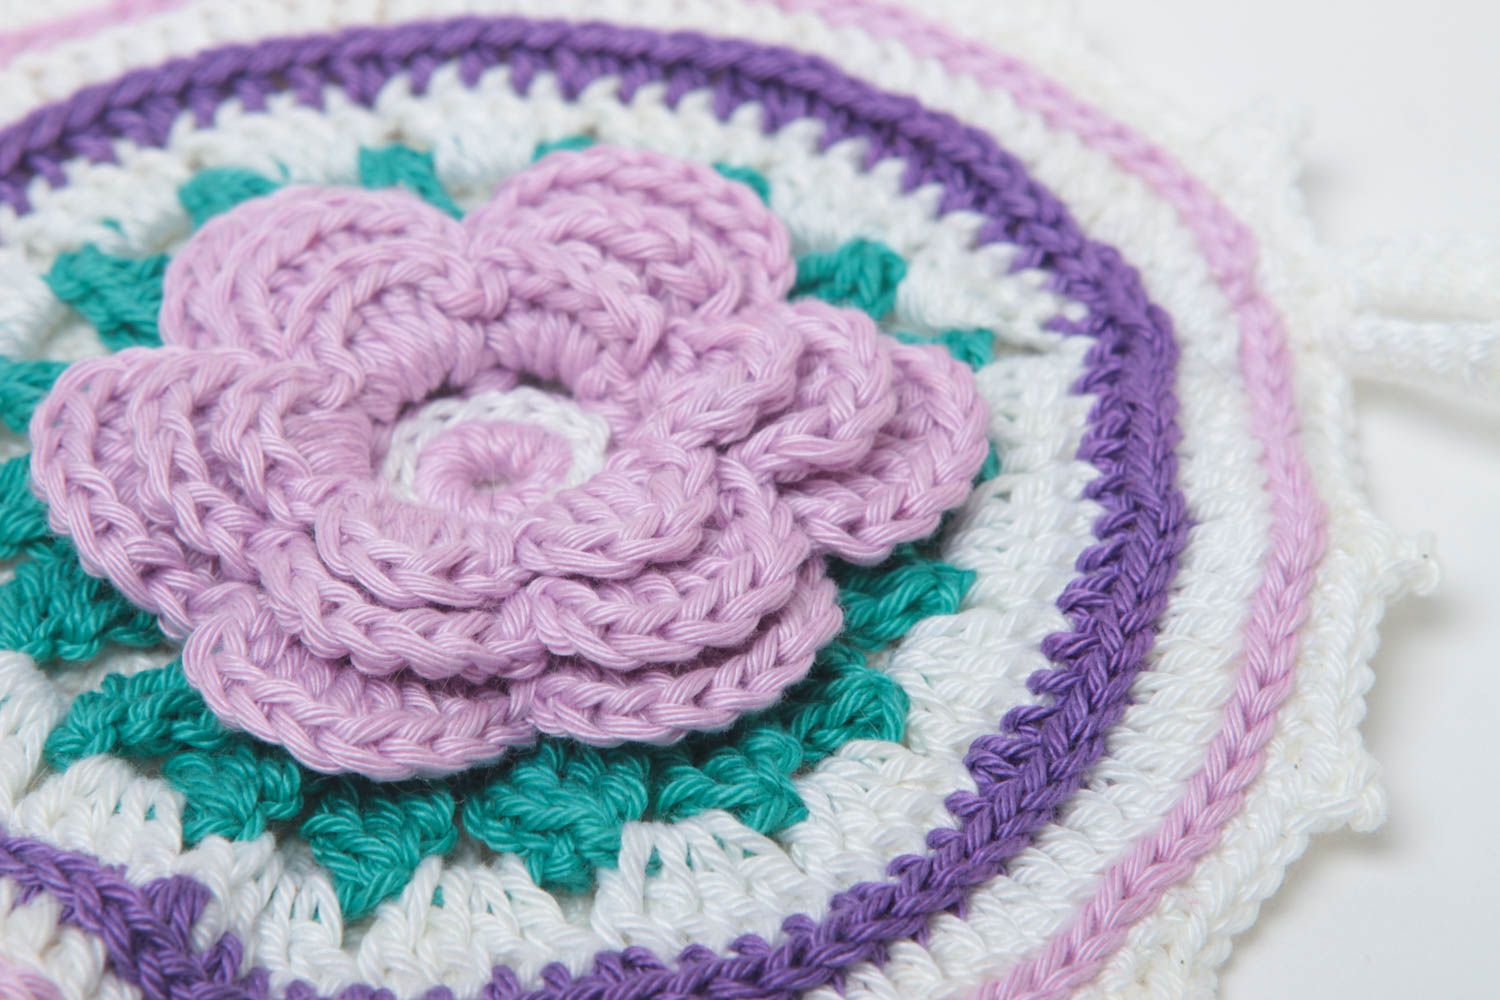 Unusual handmade pot holder homemade crochet potholder home goods gift ideas photo 3